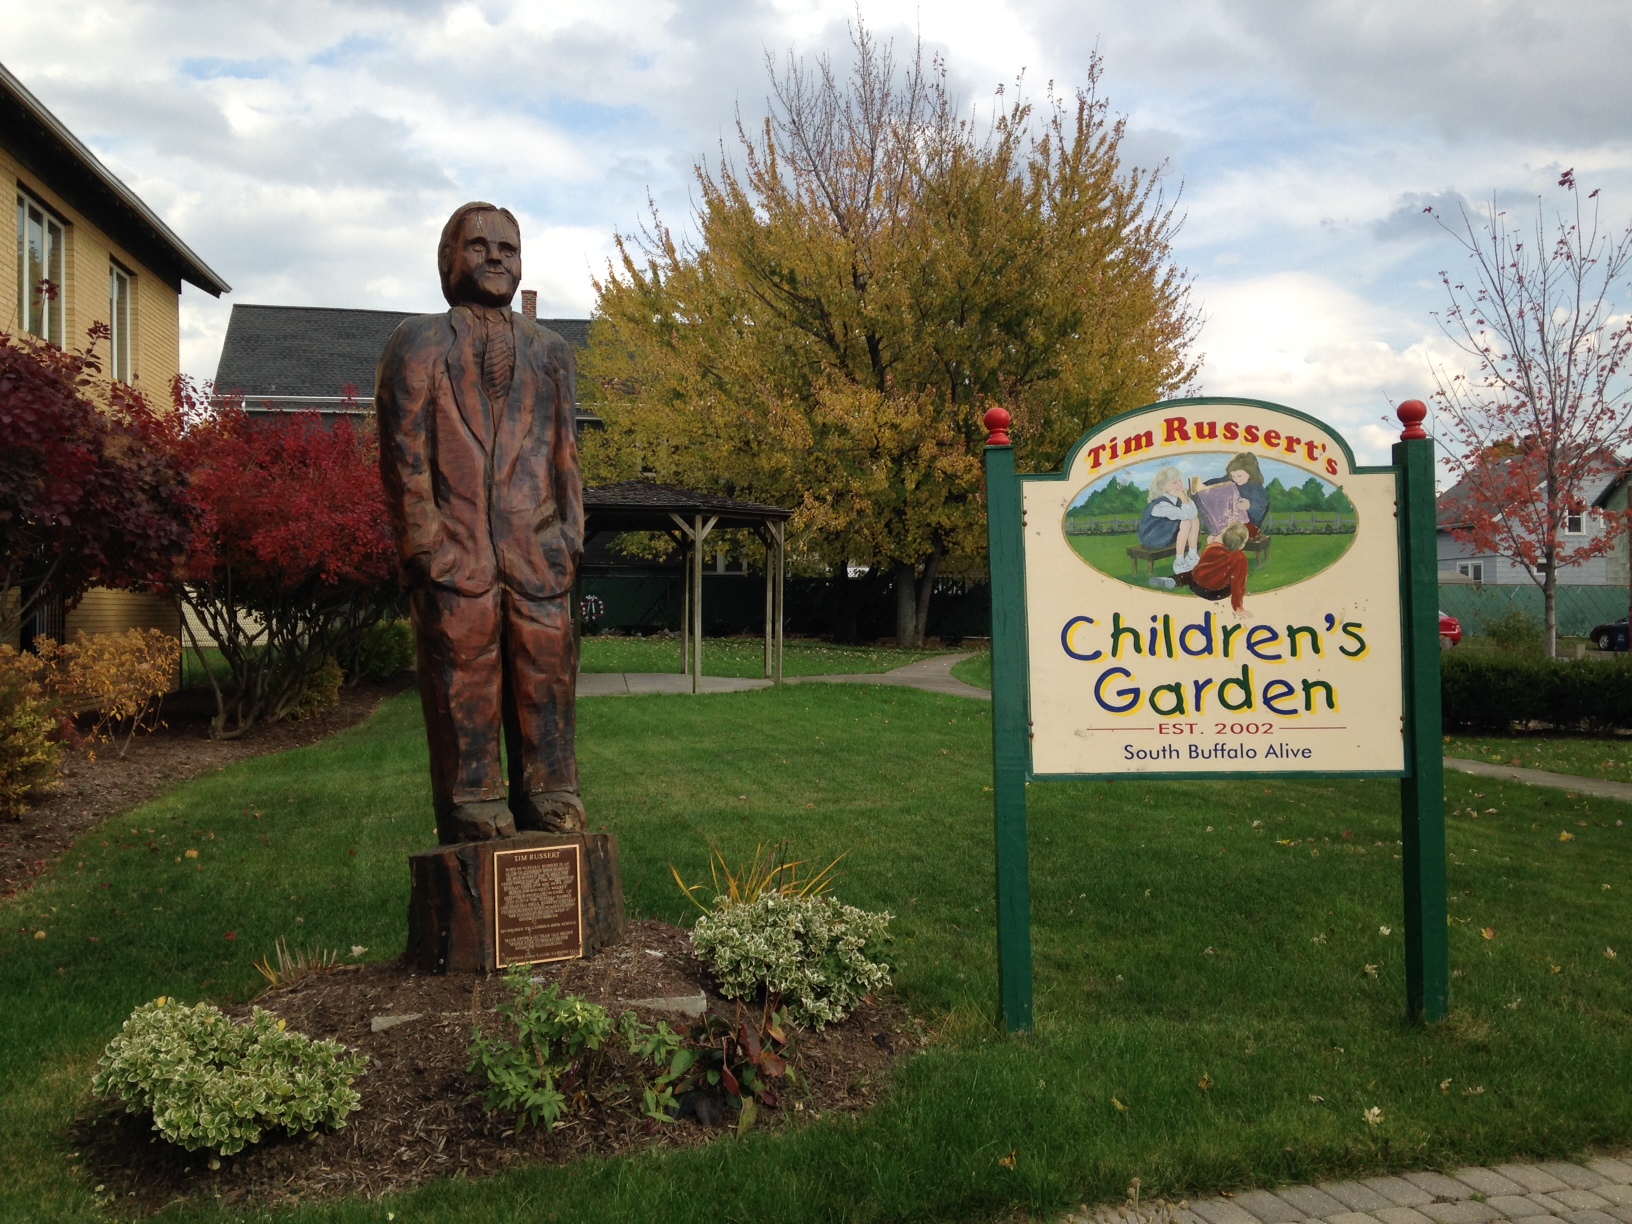 A statue of Tim Ressert stands aside a sign reading "Tim Russert's Children's Garden."